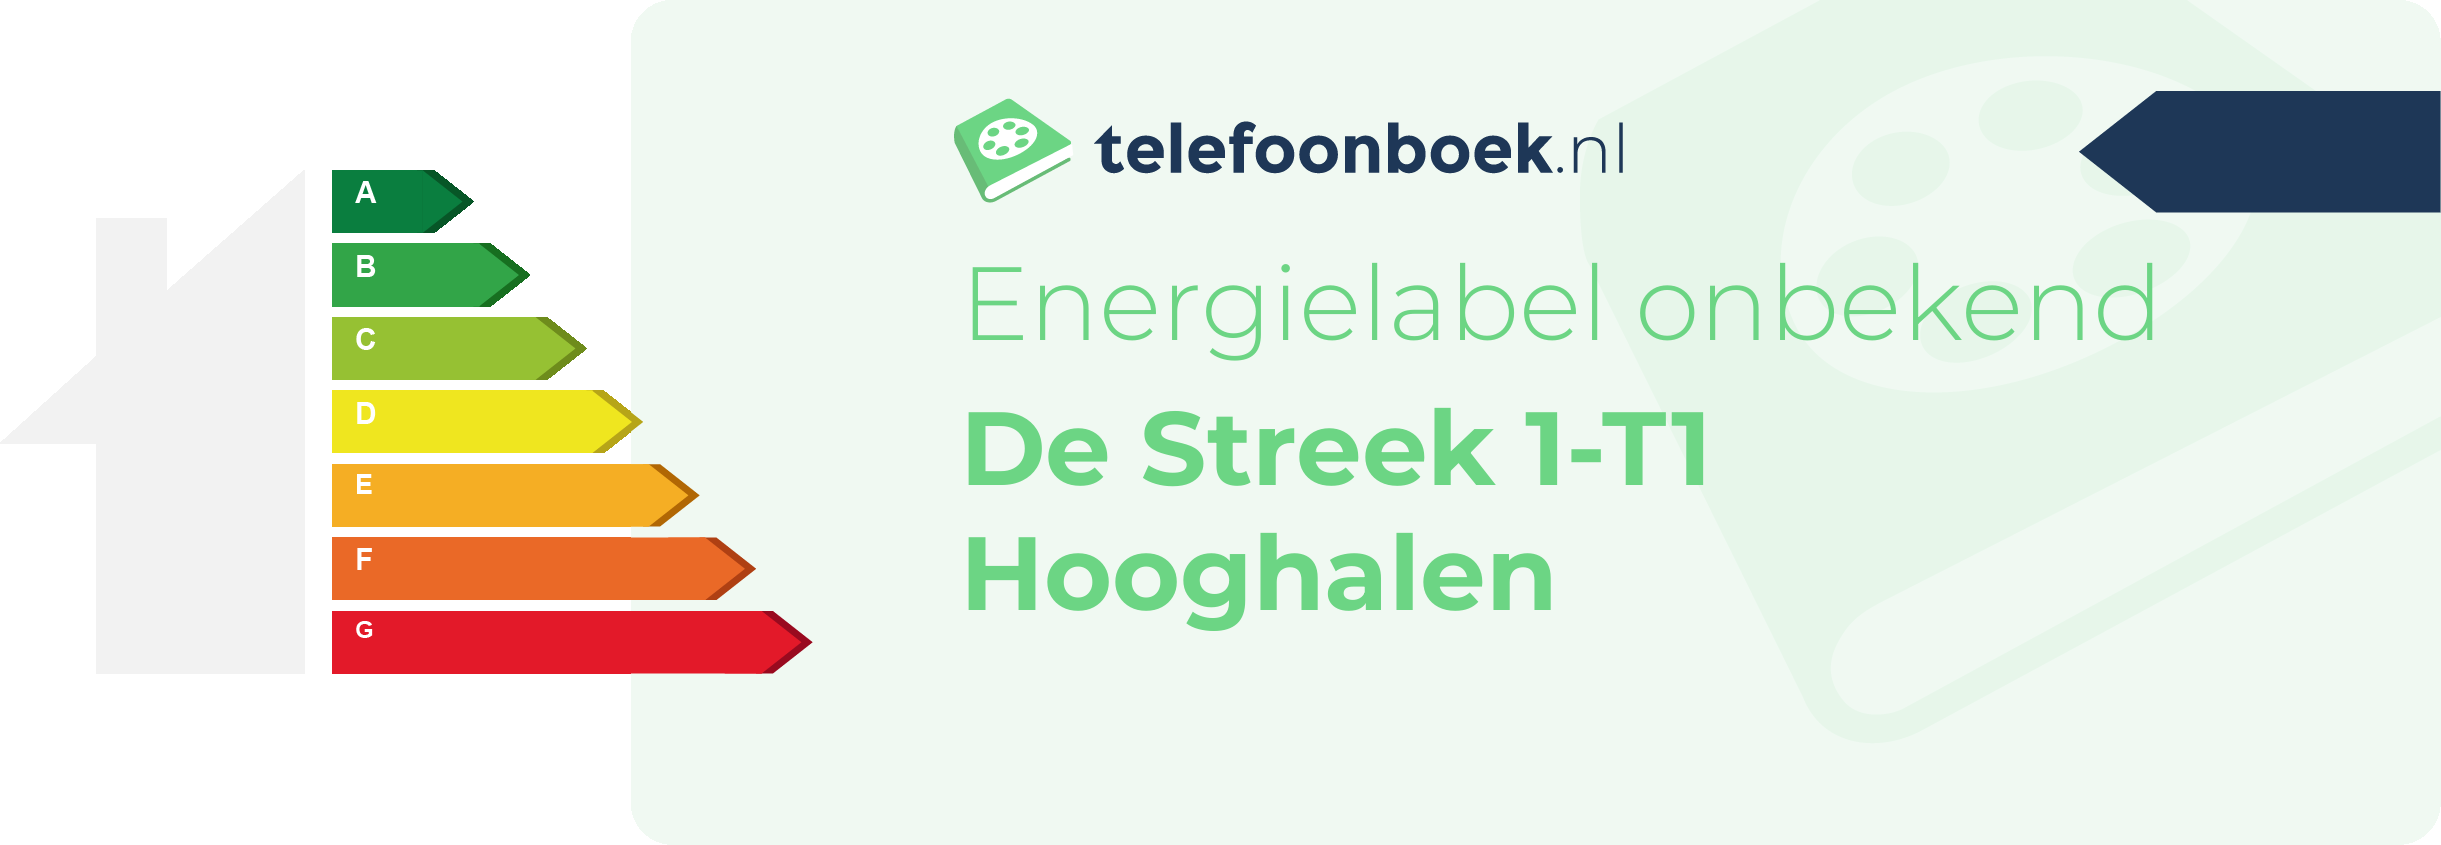 Energielabel De Streek 1-T1 Hooghalen